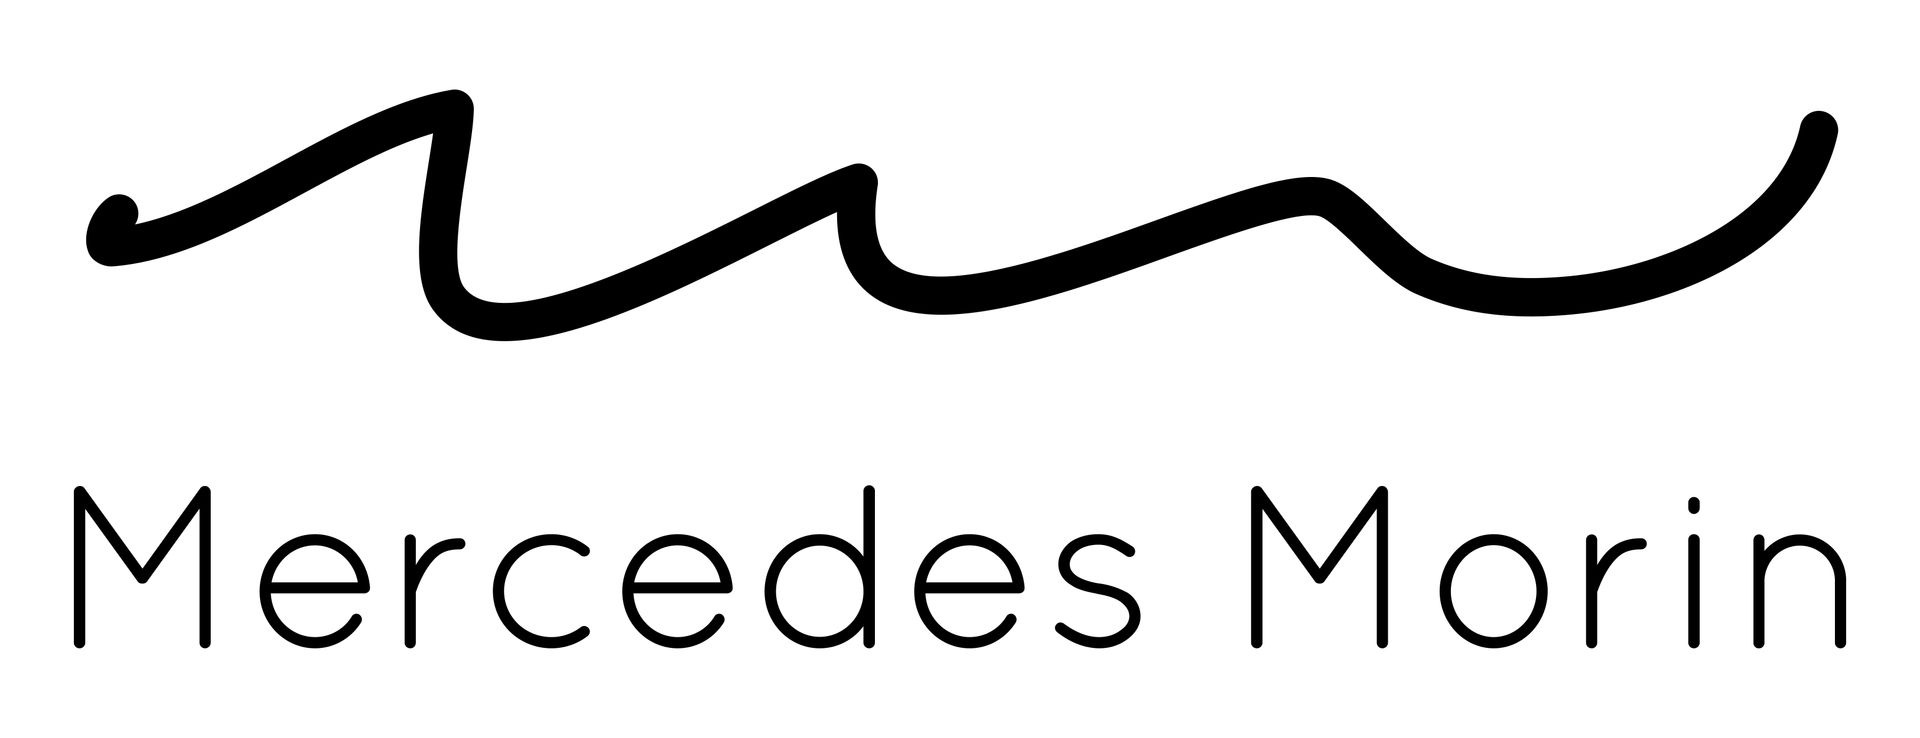 MERCEDES MORIN logo